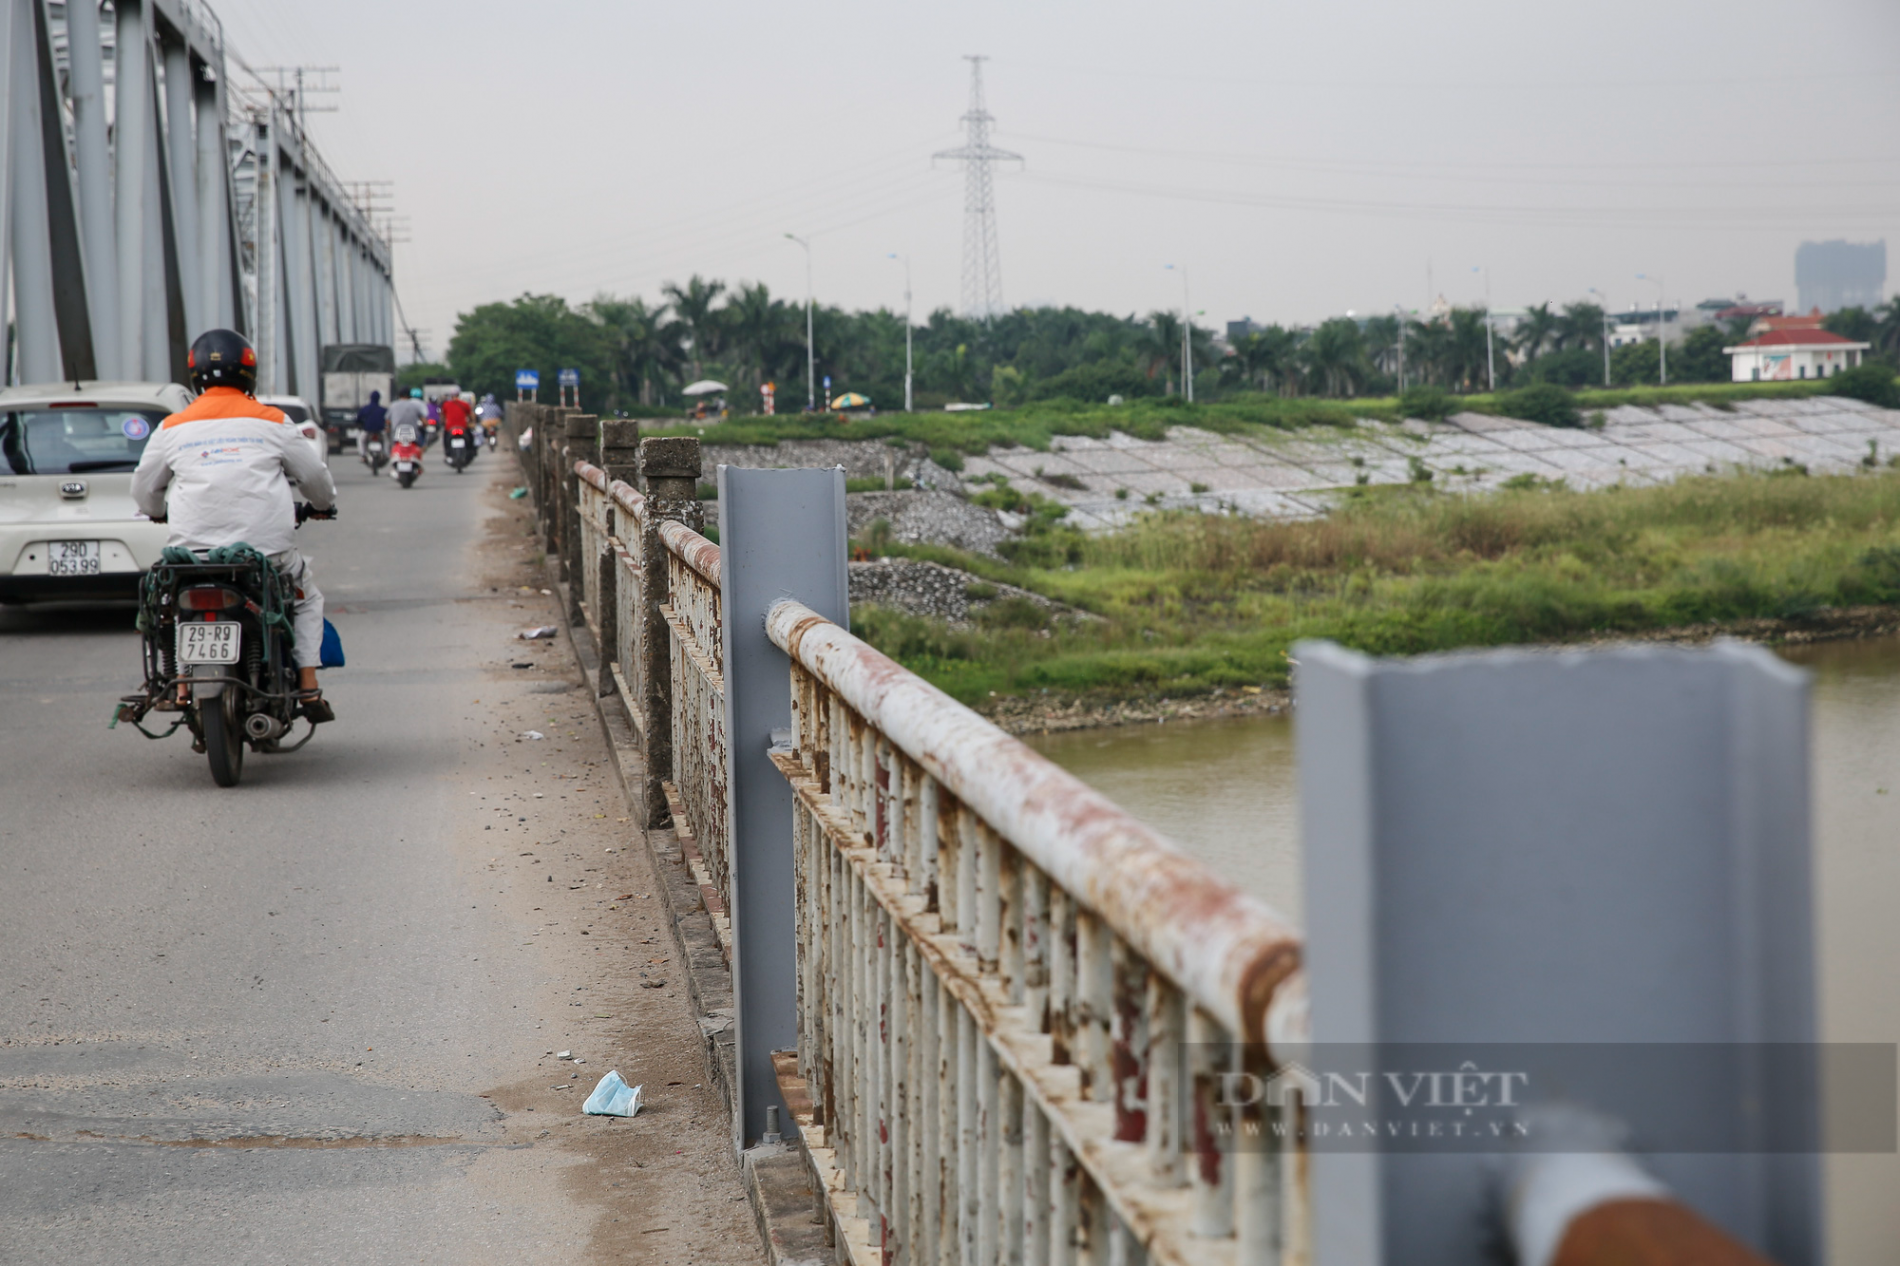 Hà Nội: Cận cảnh cây cầu xuống cấp nghiêm trọng được đề xuất xây mới trị giá gần 1800 tỷ đồng - Ảnh 10.